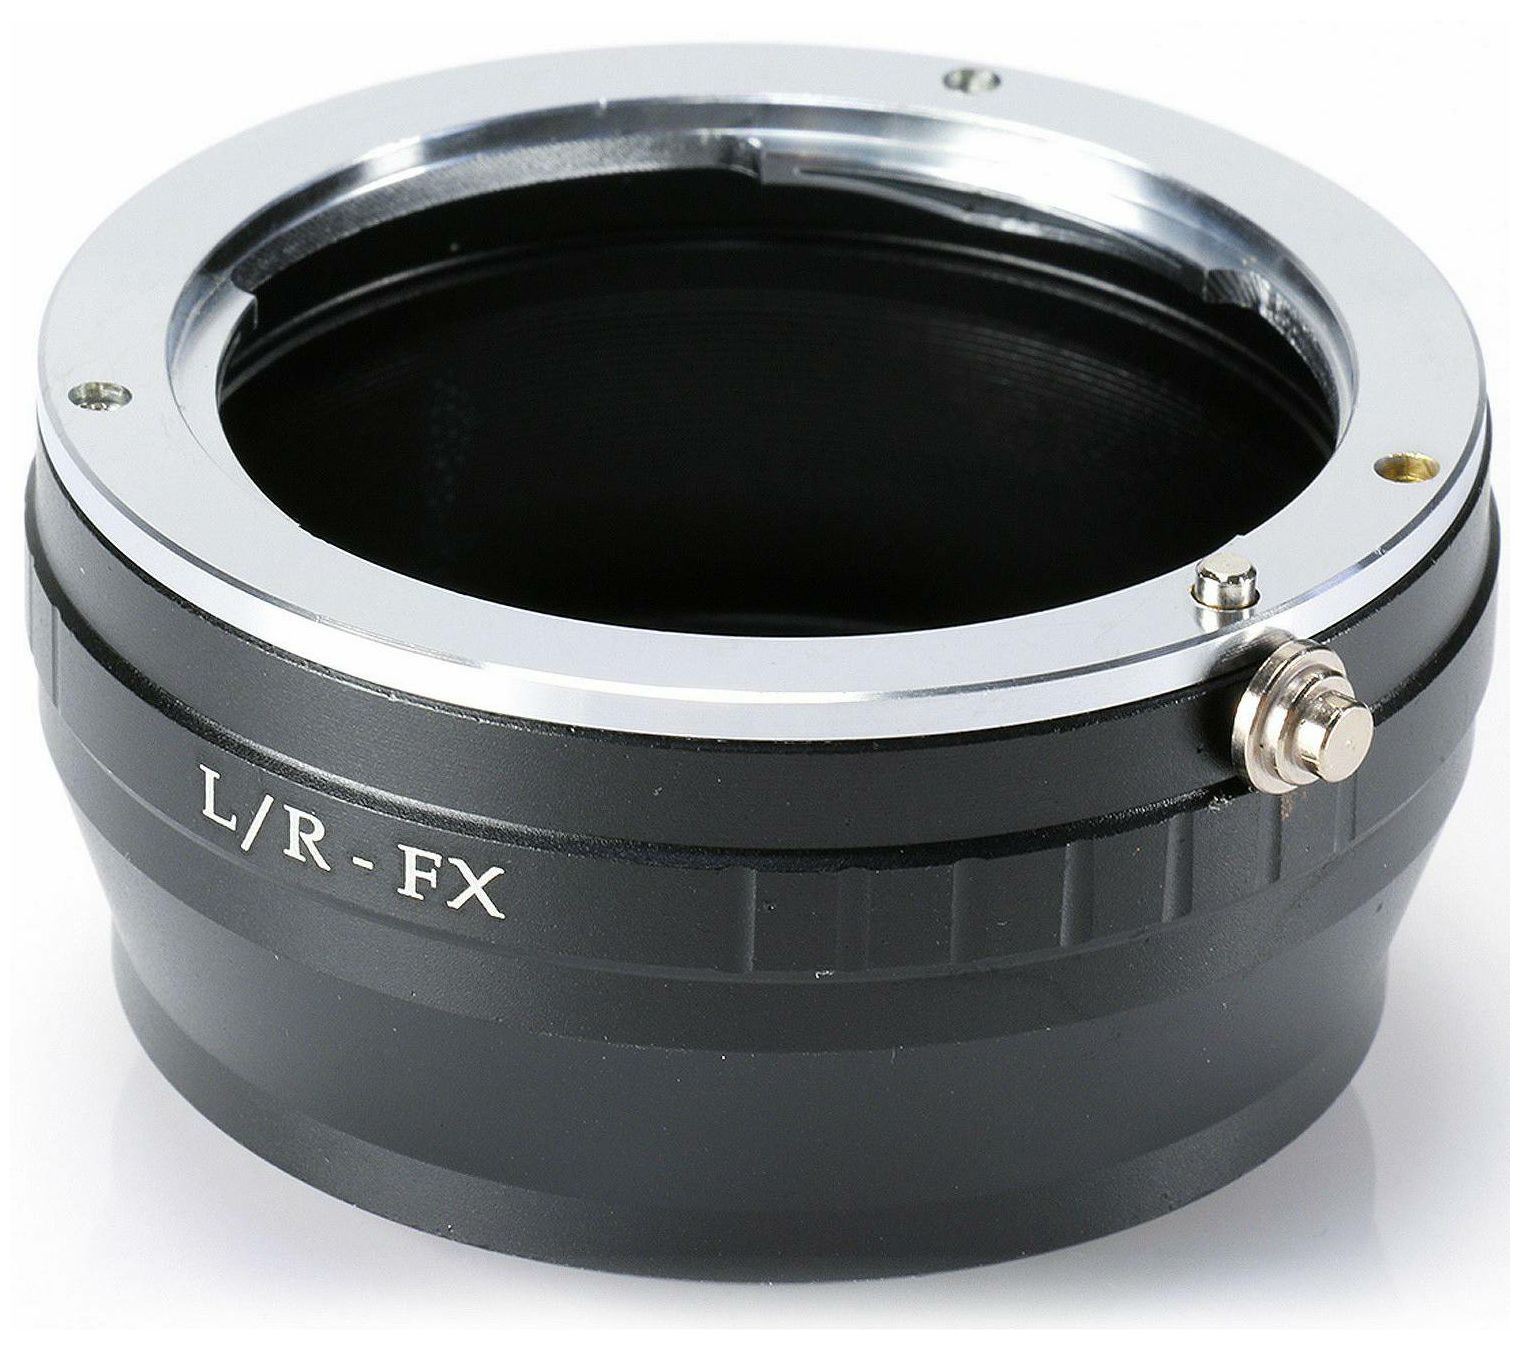 Adapter Leica R L/R LR objektiv na Fujifilm Fuji X-mount fotoaparat